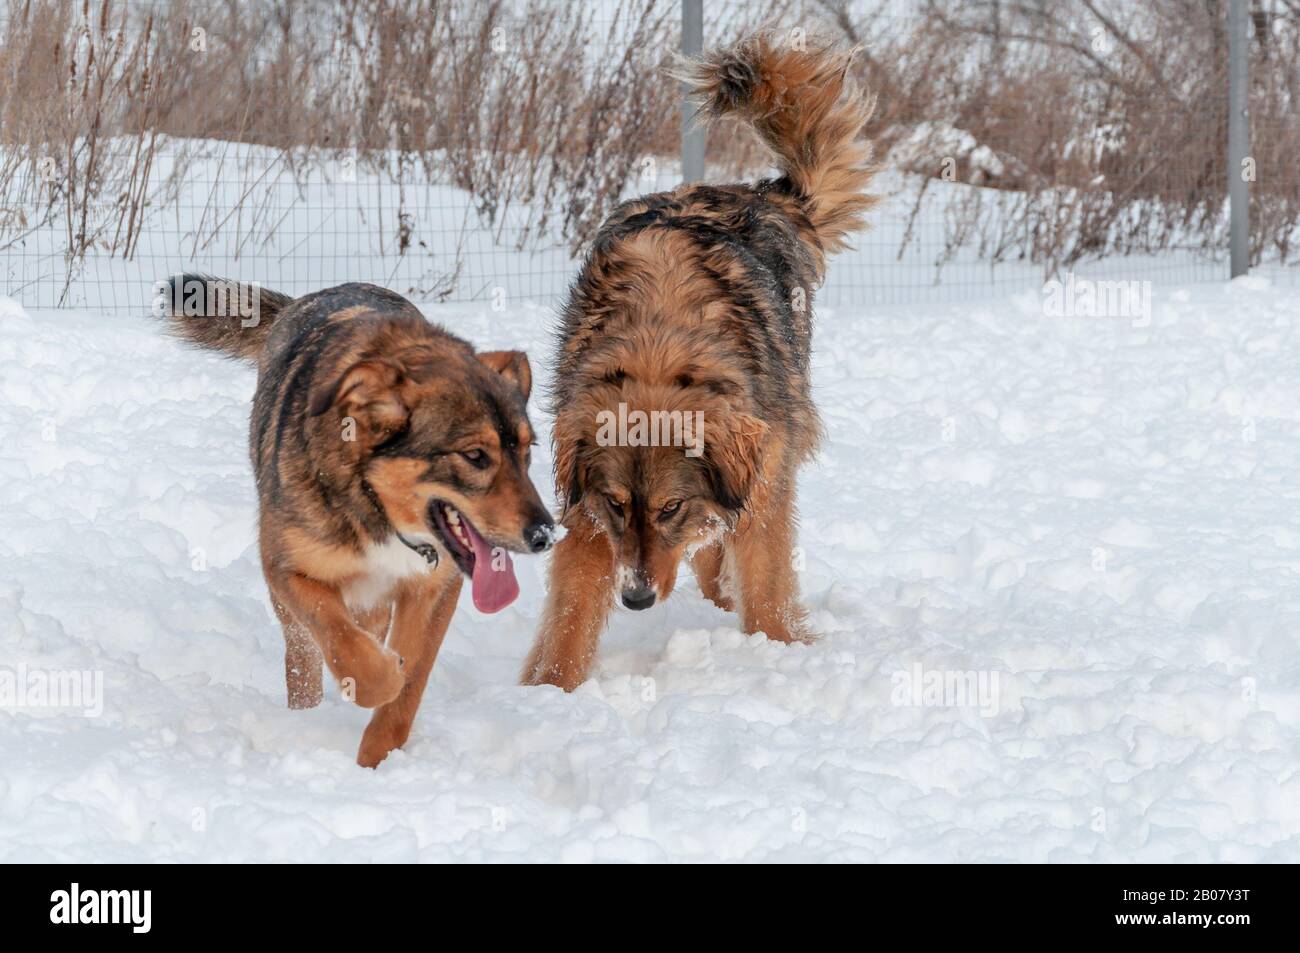 Zwei große schöne rote Hunde, die auf einer schneebedeckten Fläche spazieren gehen Stockfoto